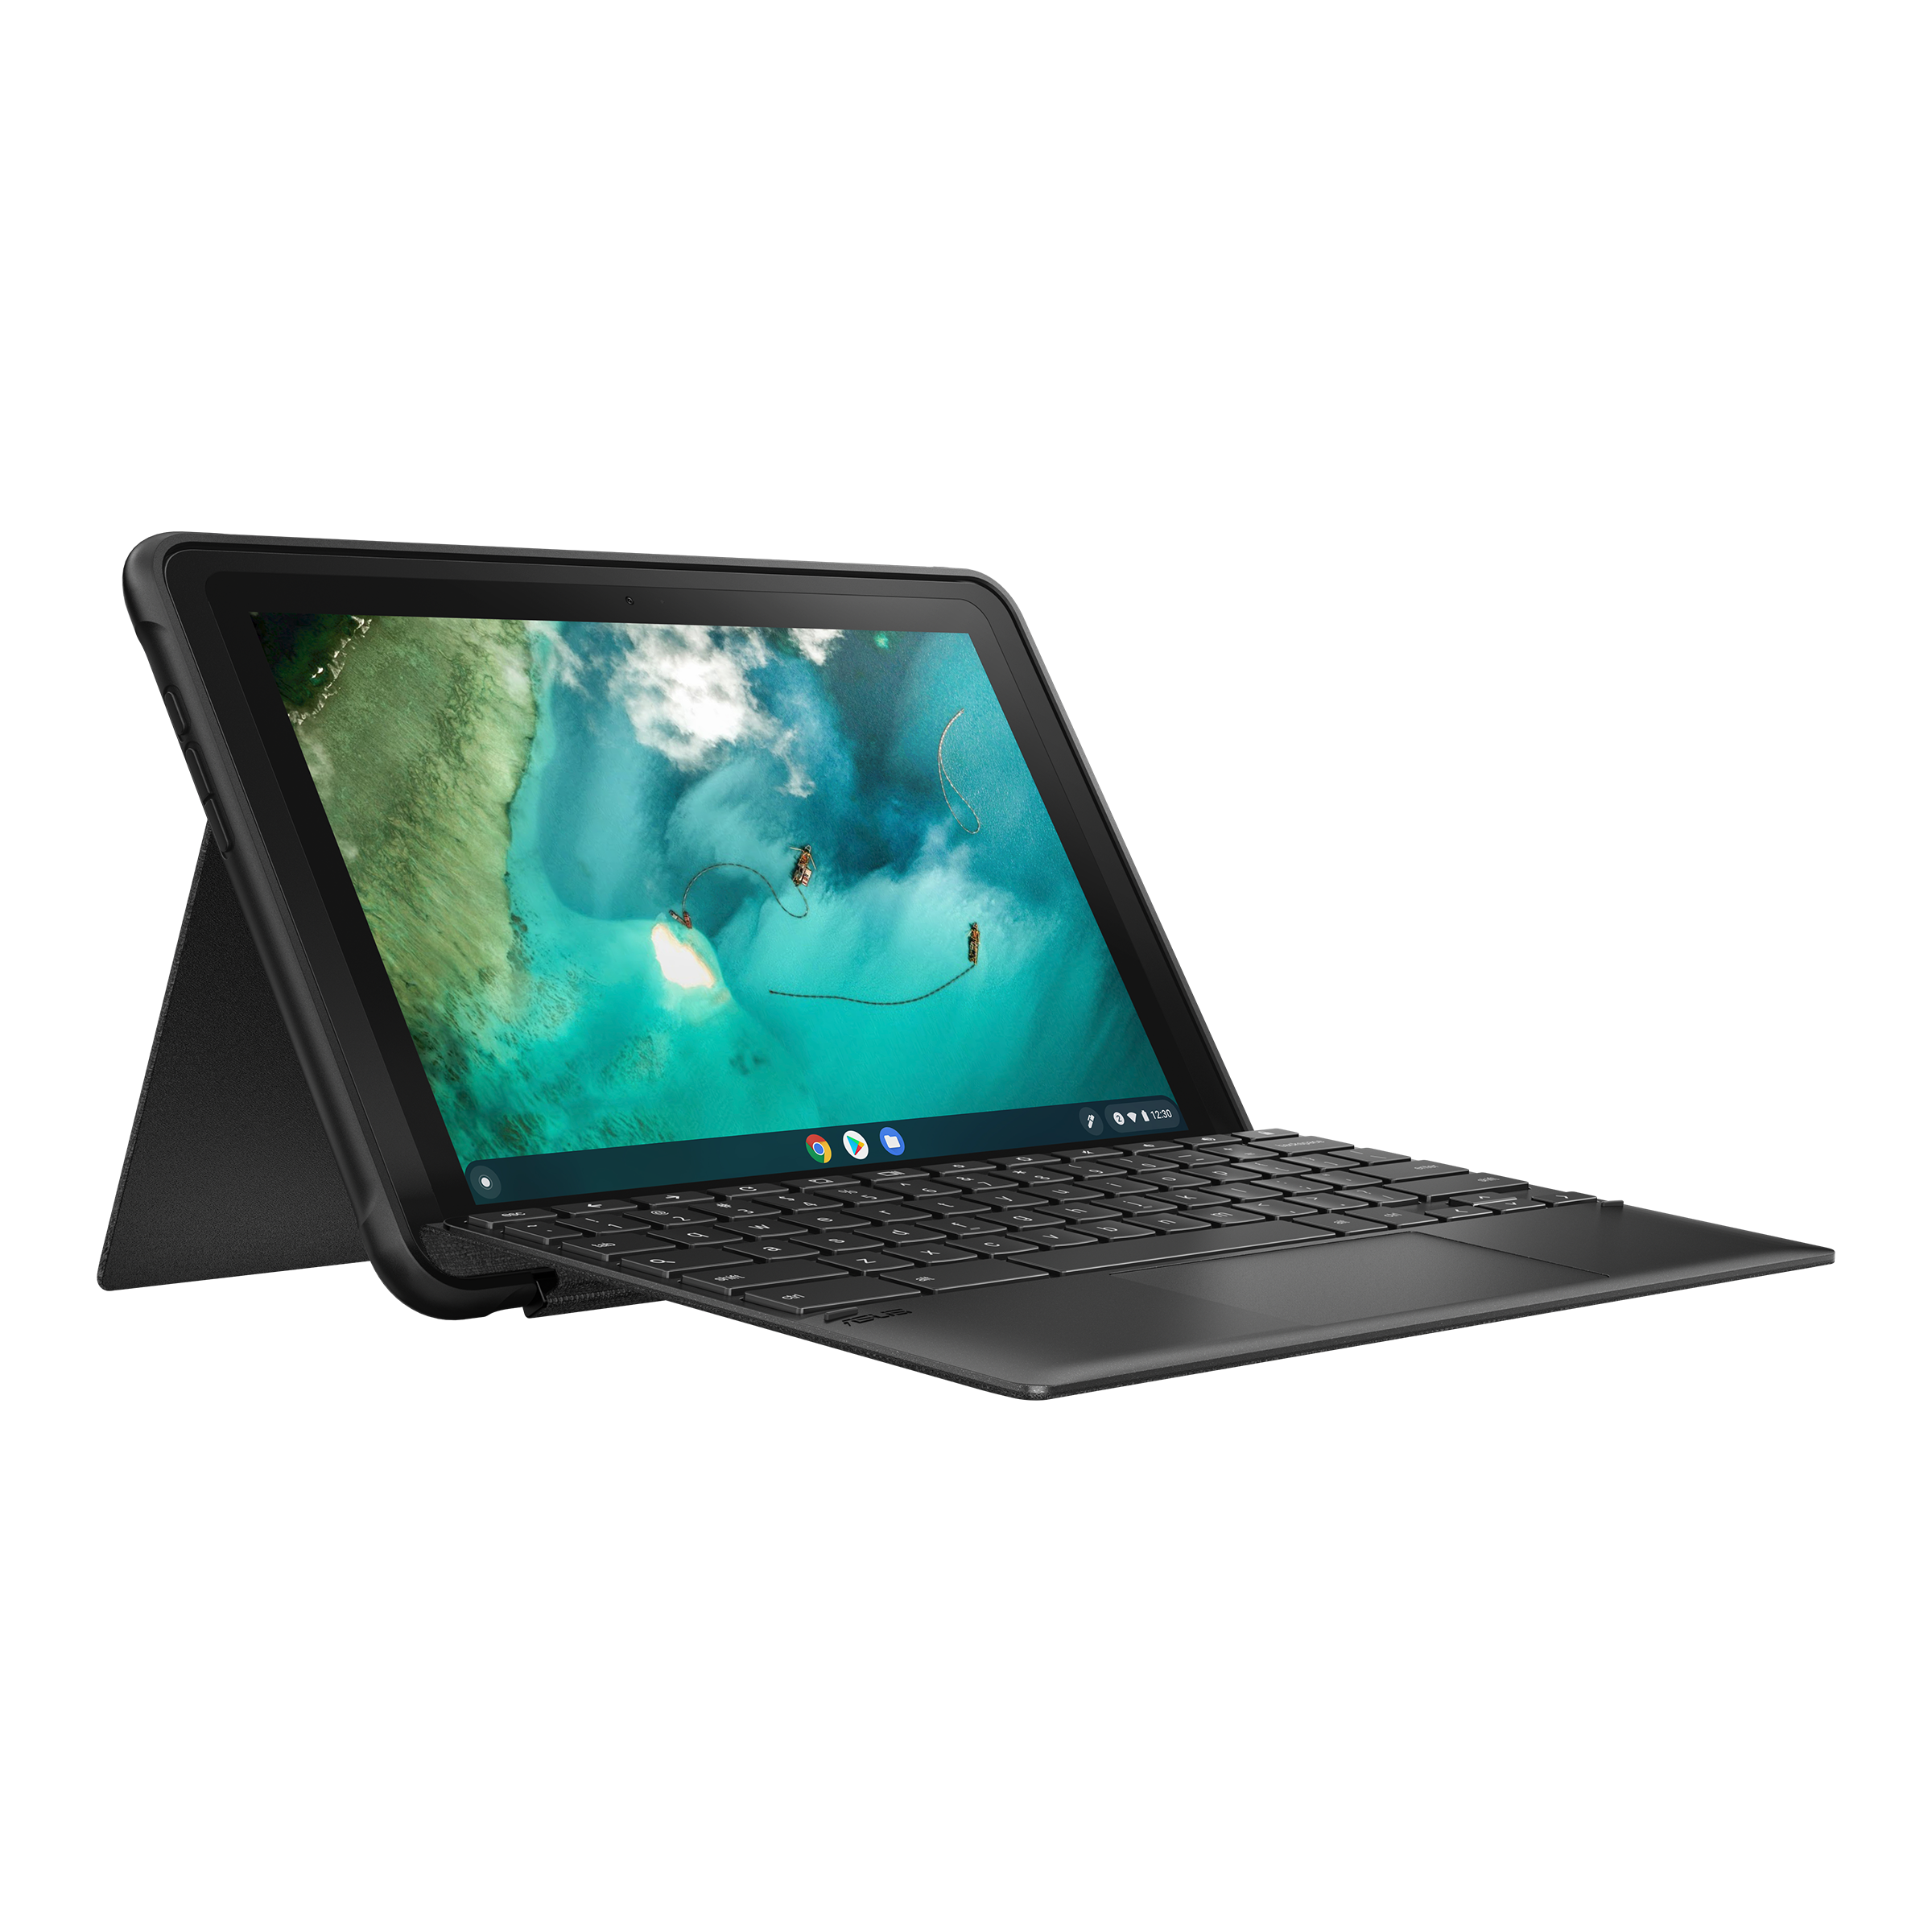 ASUS Chromebook Detachable CZ1 (CZ1000)｜Laptops For Students 